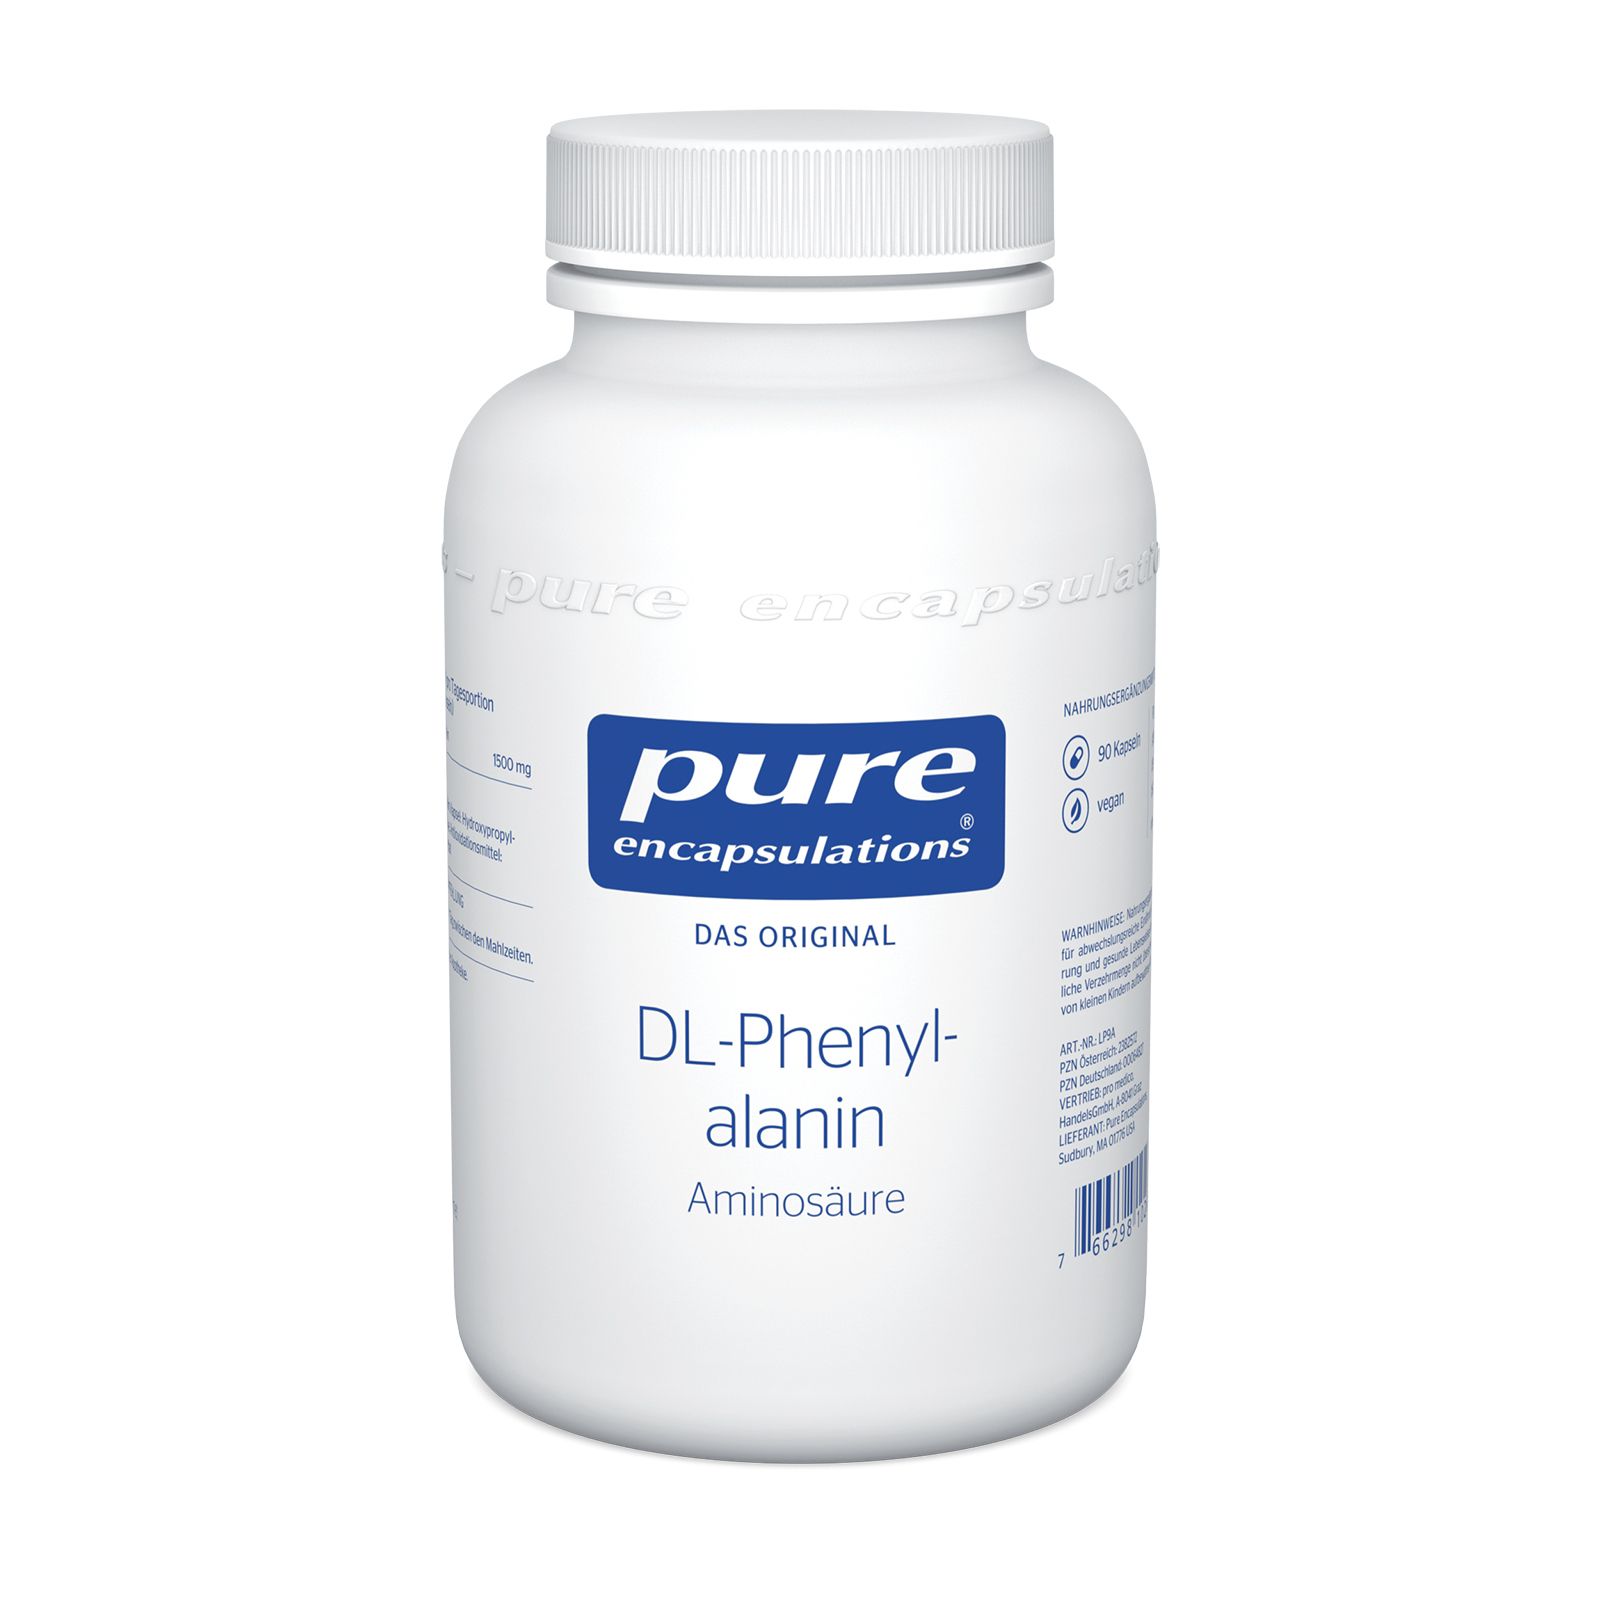 Pure Encapsulations® DL-Phenylalanin